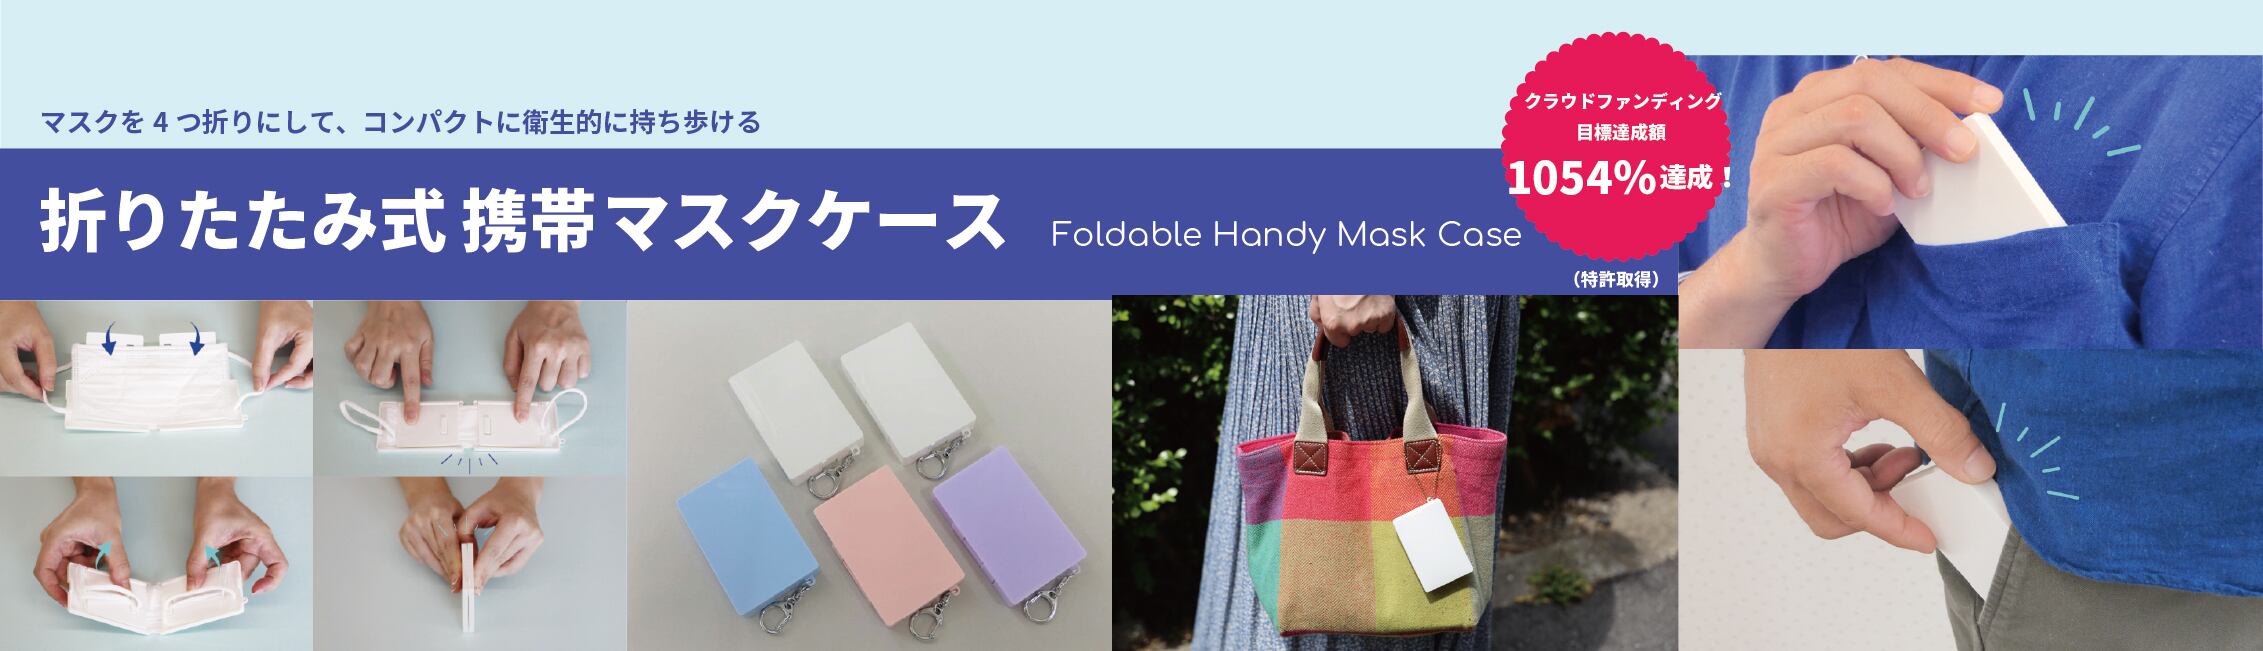 折りたたみ式携帯マスクケース by 株式会社カワキタ